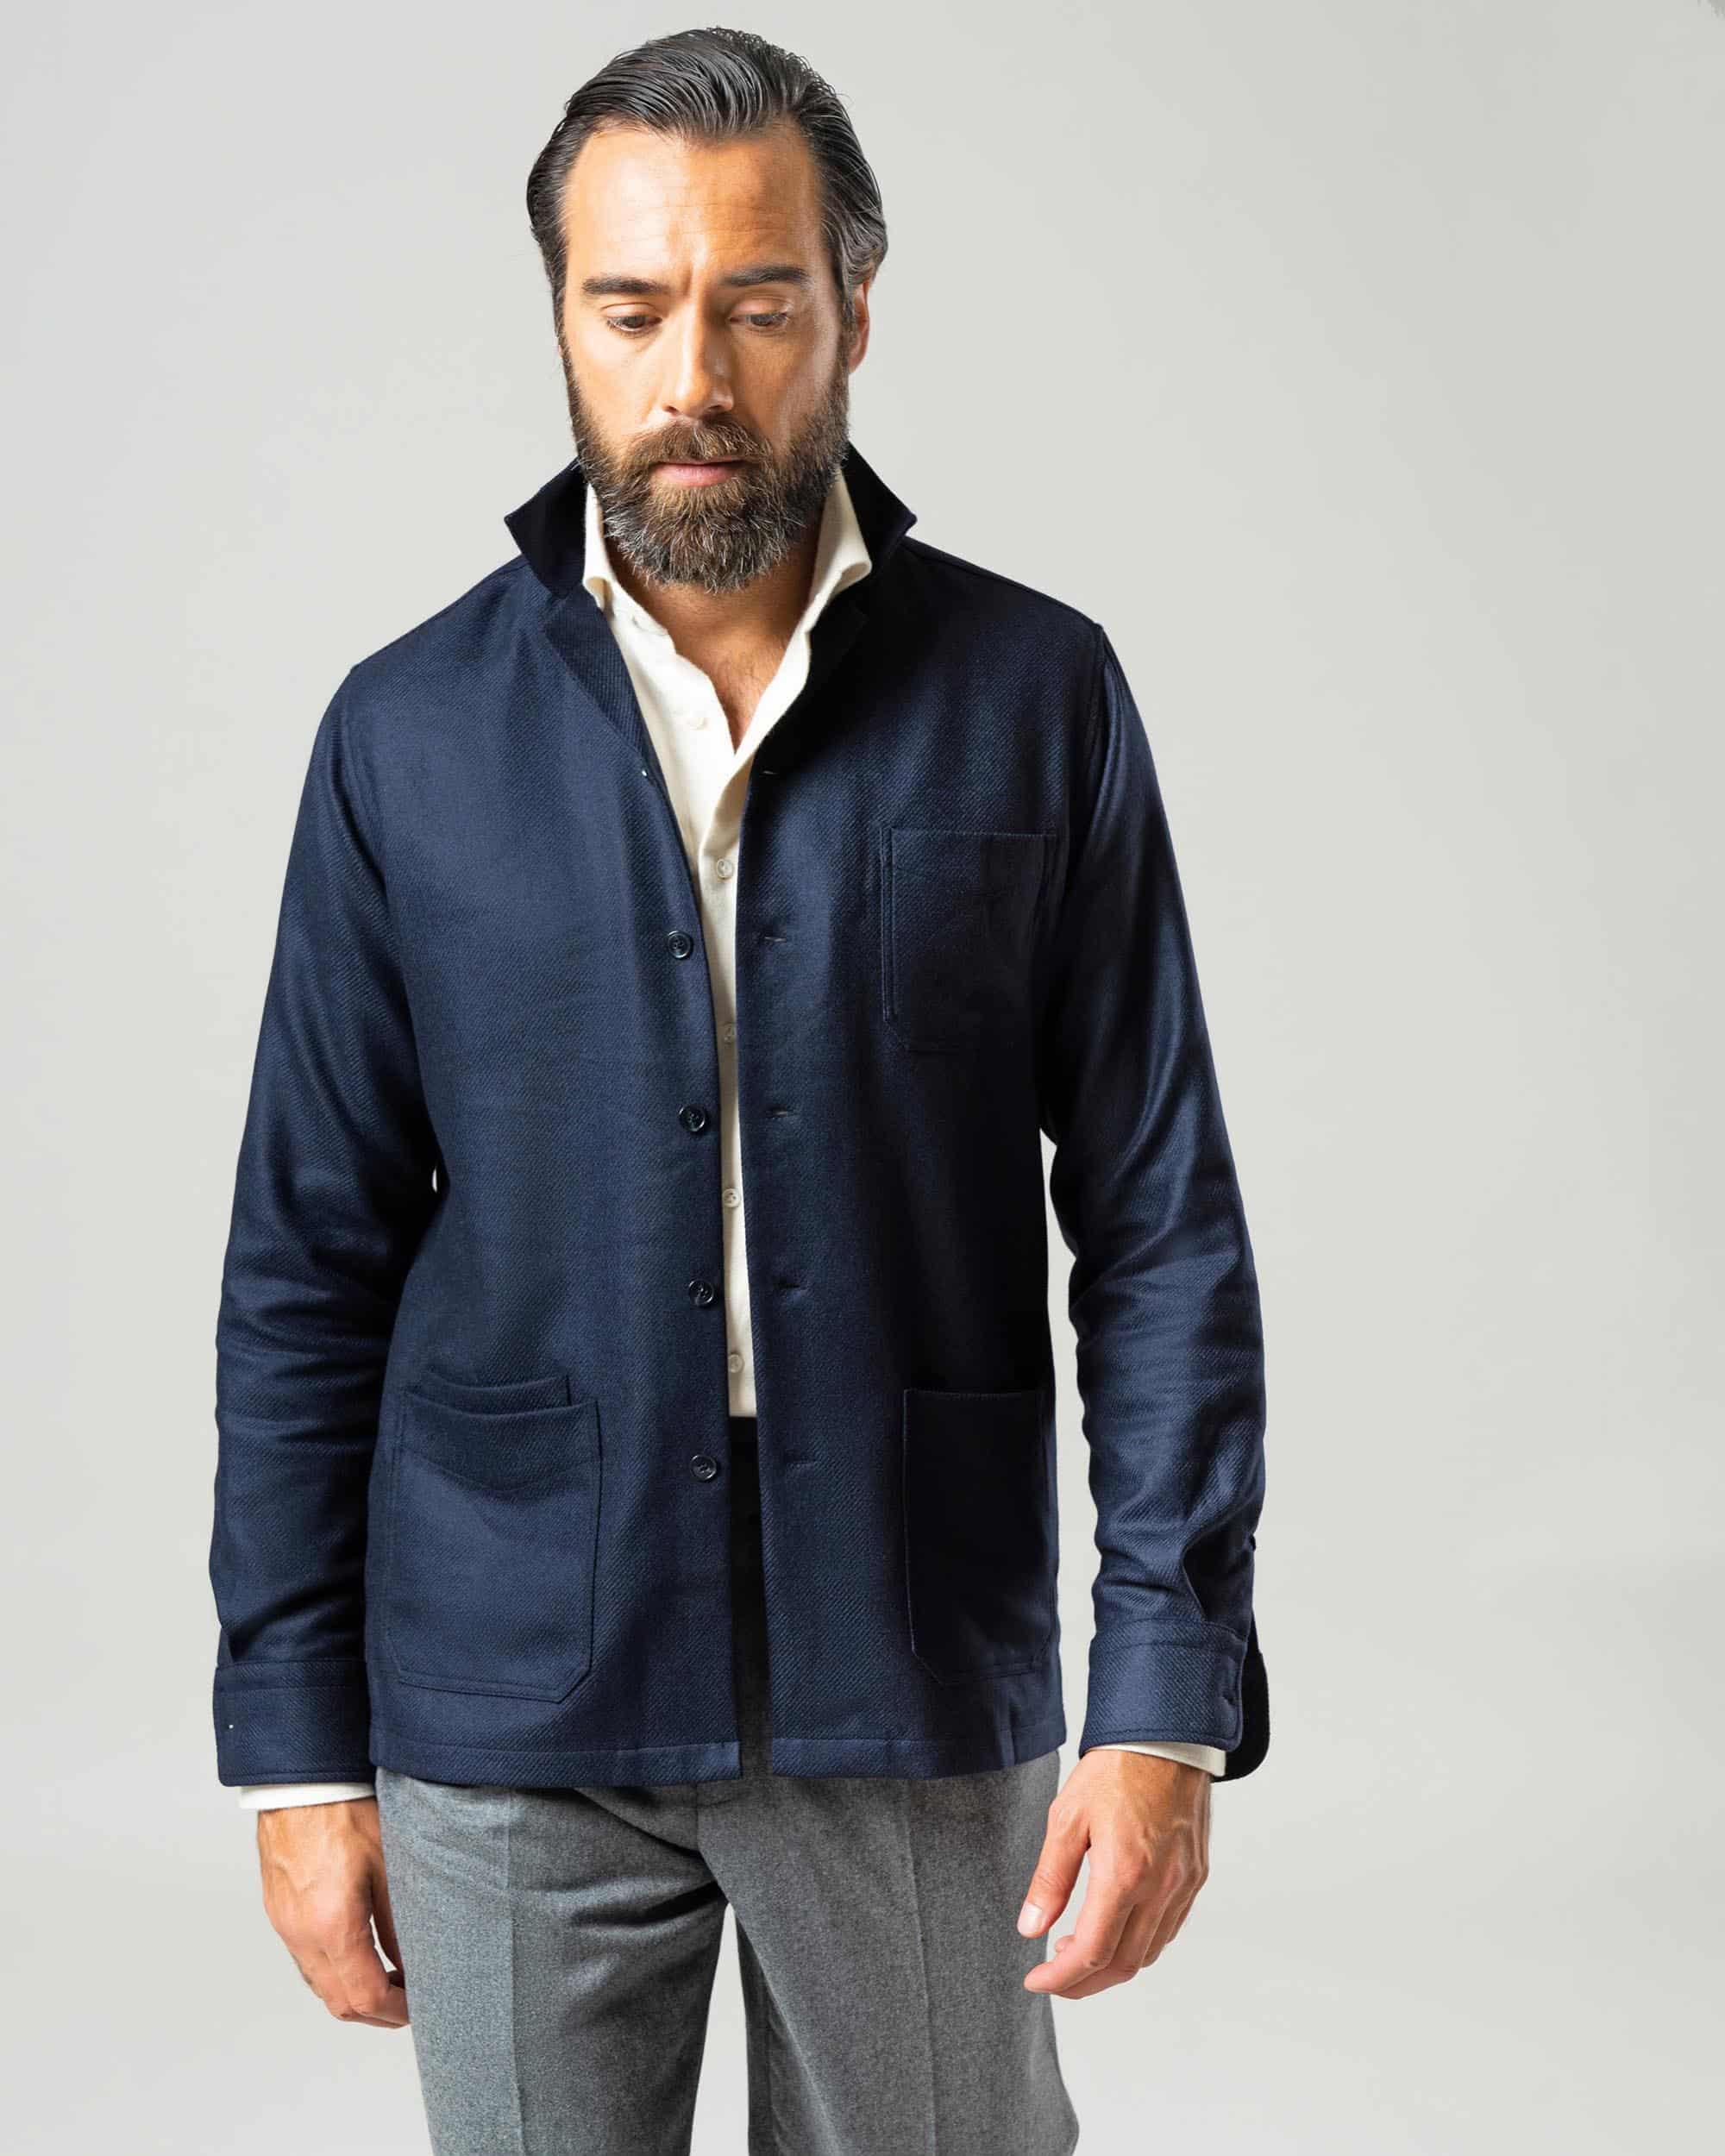 Blå shirt jacket i ull & silke image 3